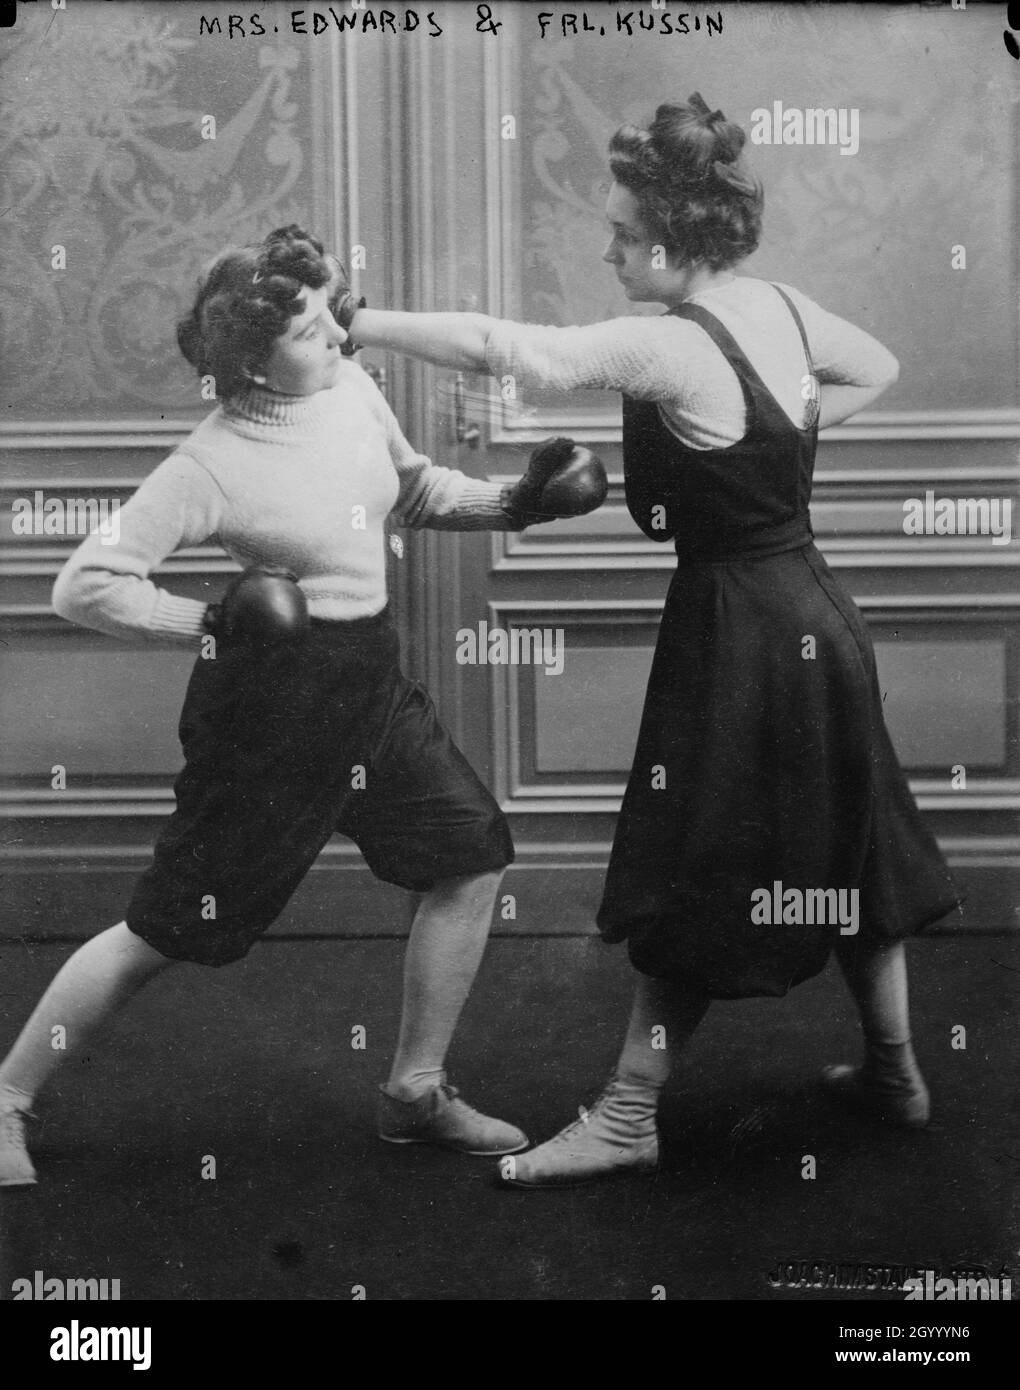 Das Foto zeigt Fraulein Kussin (rechts) und Mrs. Edwards (links), die am 7. März 1912 einen Boxkampf hatten. Stockfoto